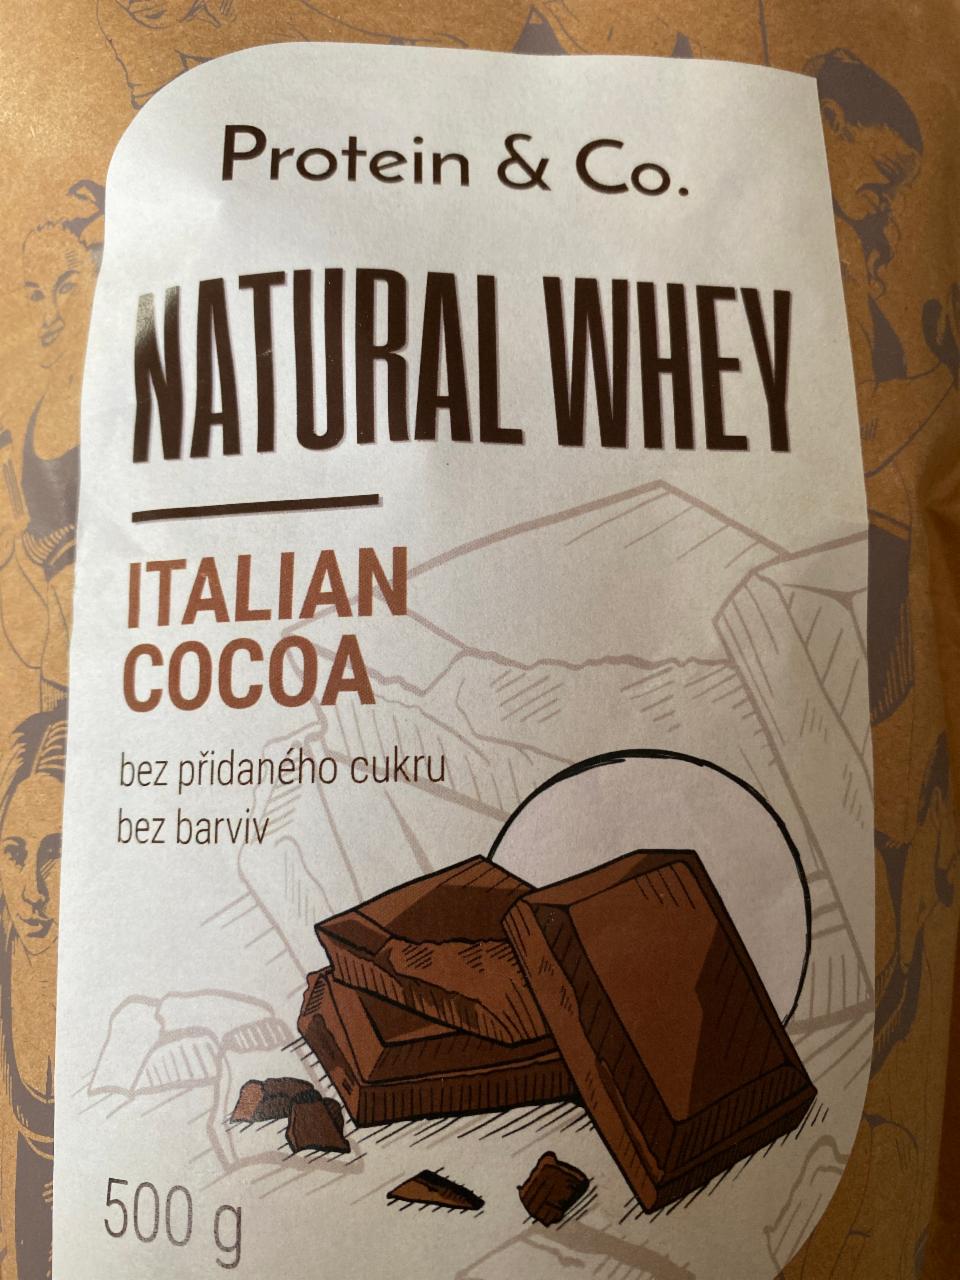 Fotografie - Natural whey italian cocoa Protein & Co.